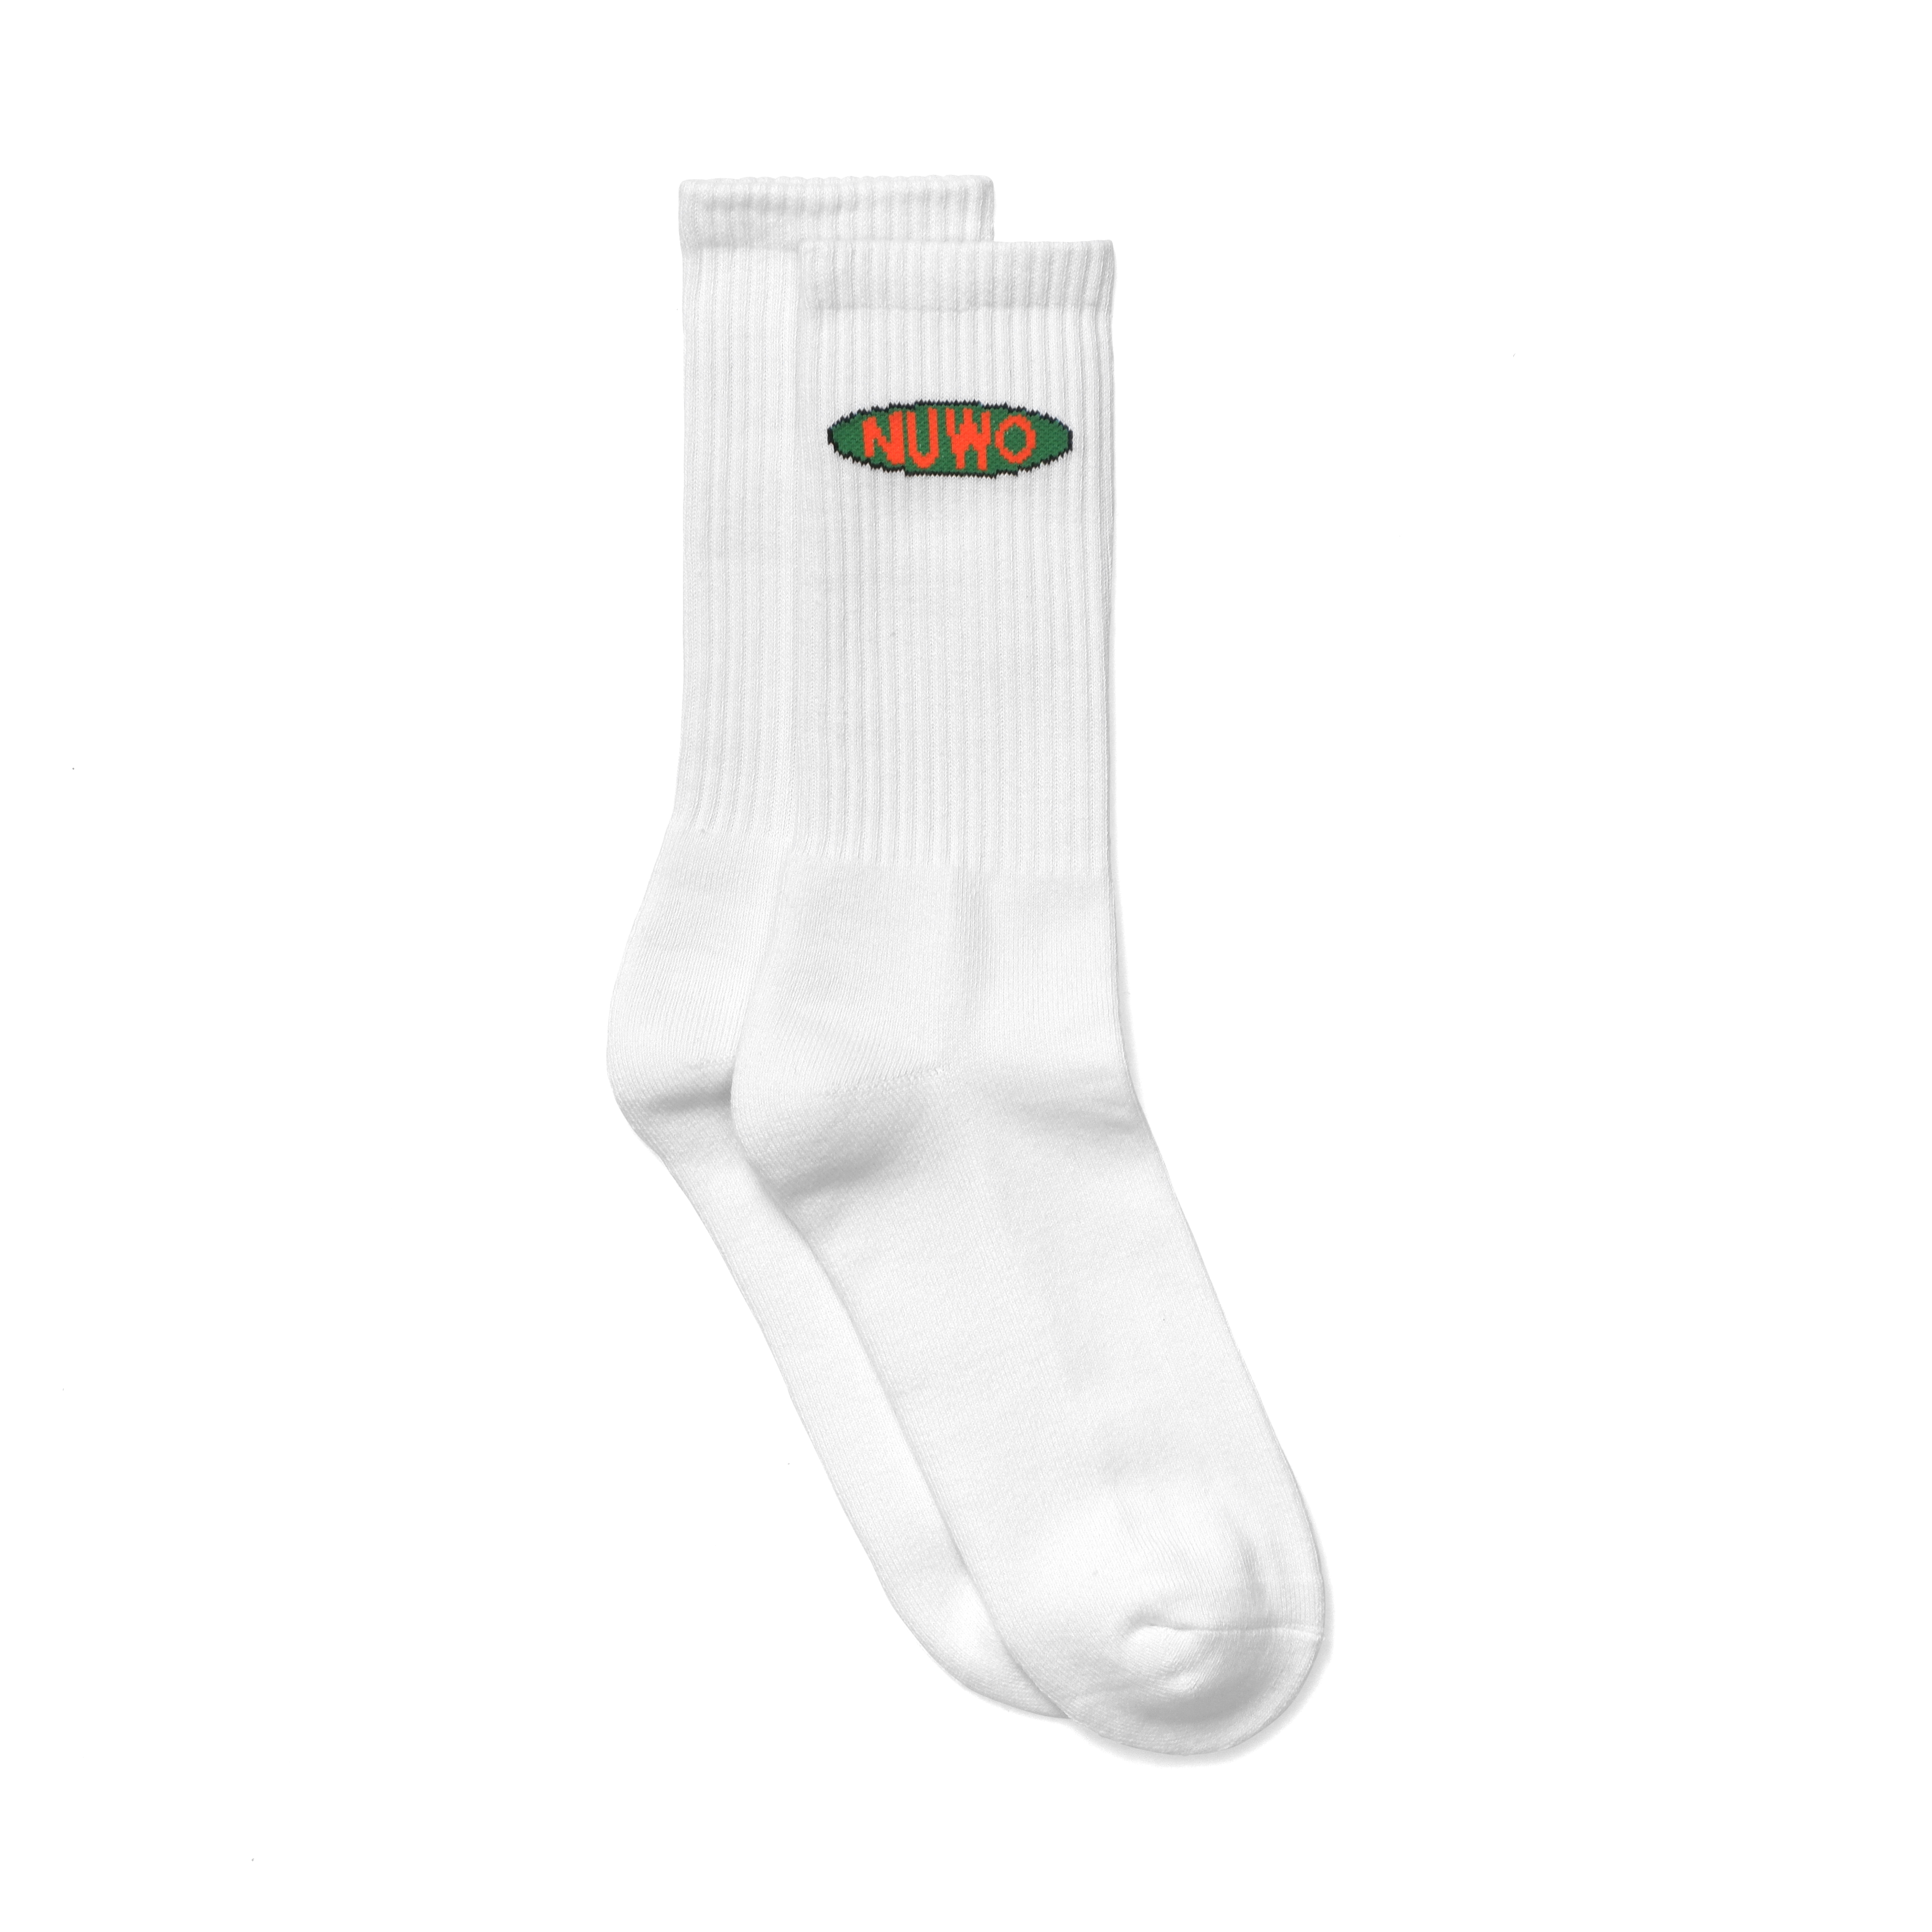 Logo socks (white) — NUWO